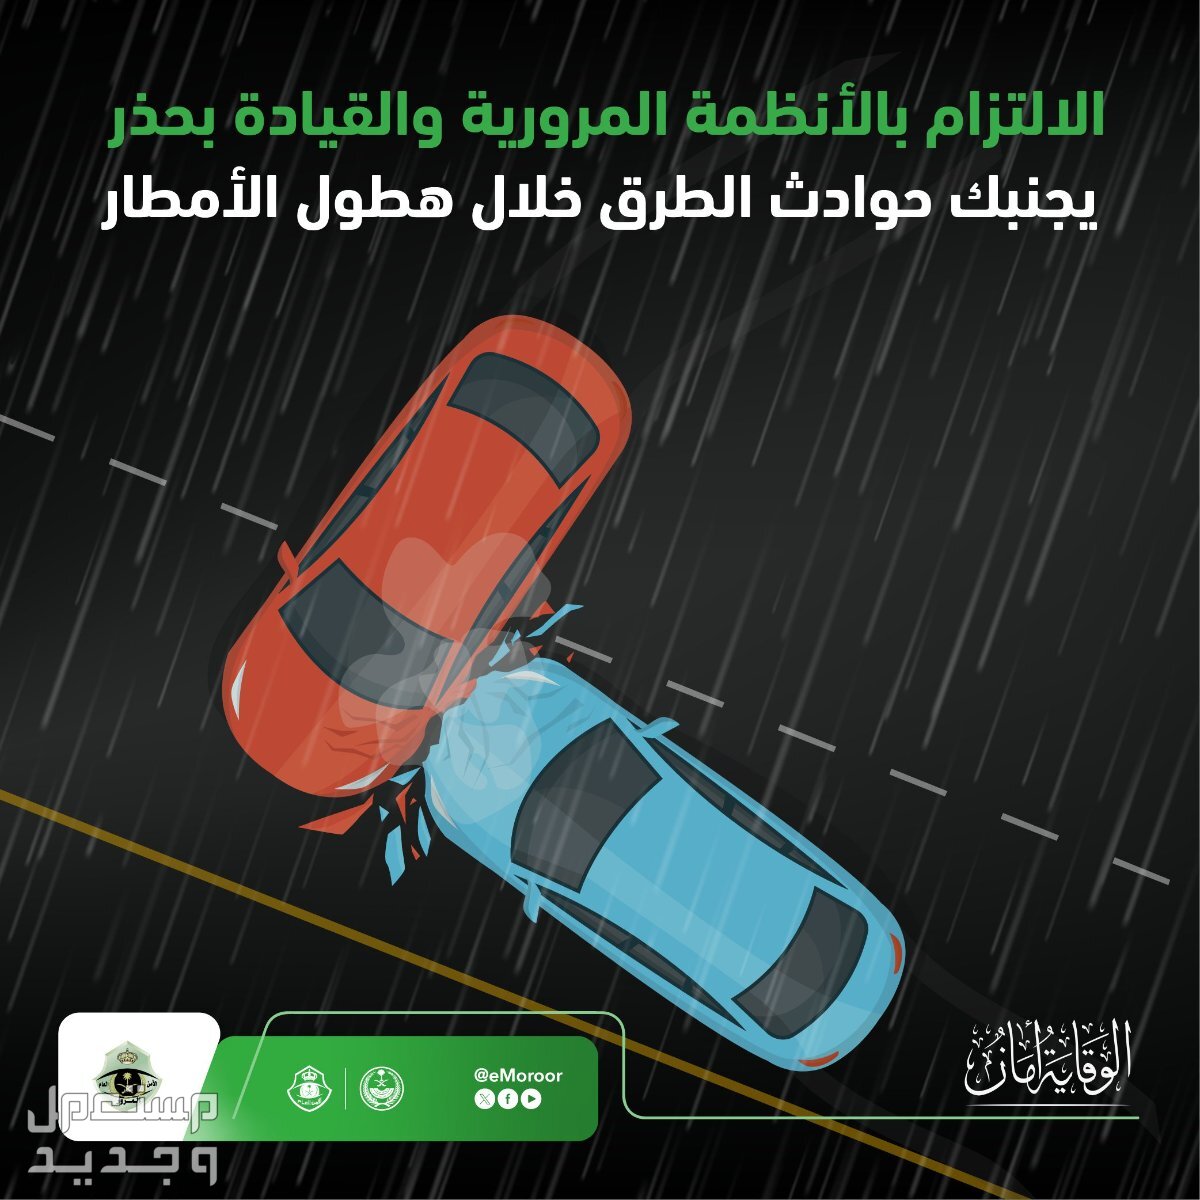 "المرور" يوضح قيمة مخالفة القيادة على الأرصفة والمسارات في الإمارات العربية المتحدة القيادة أثناء المطر